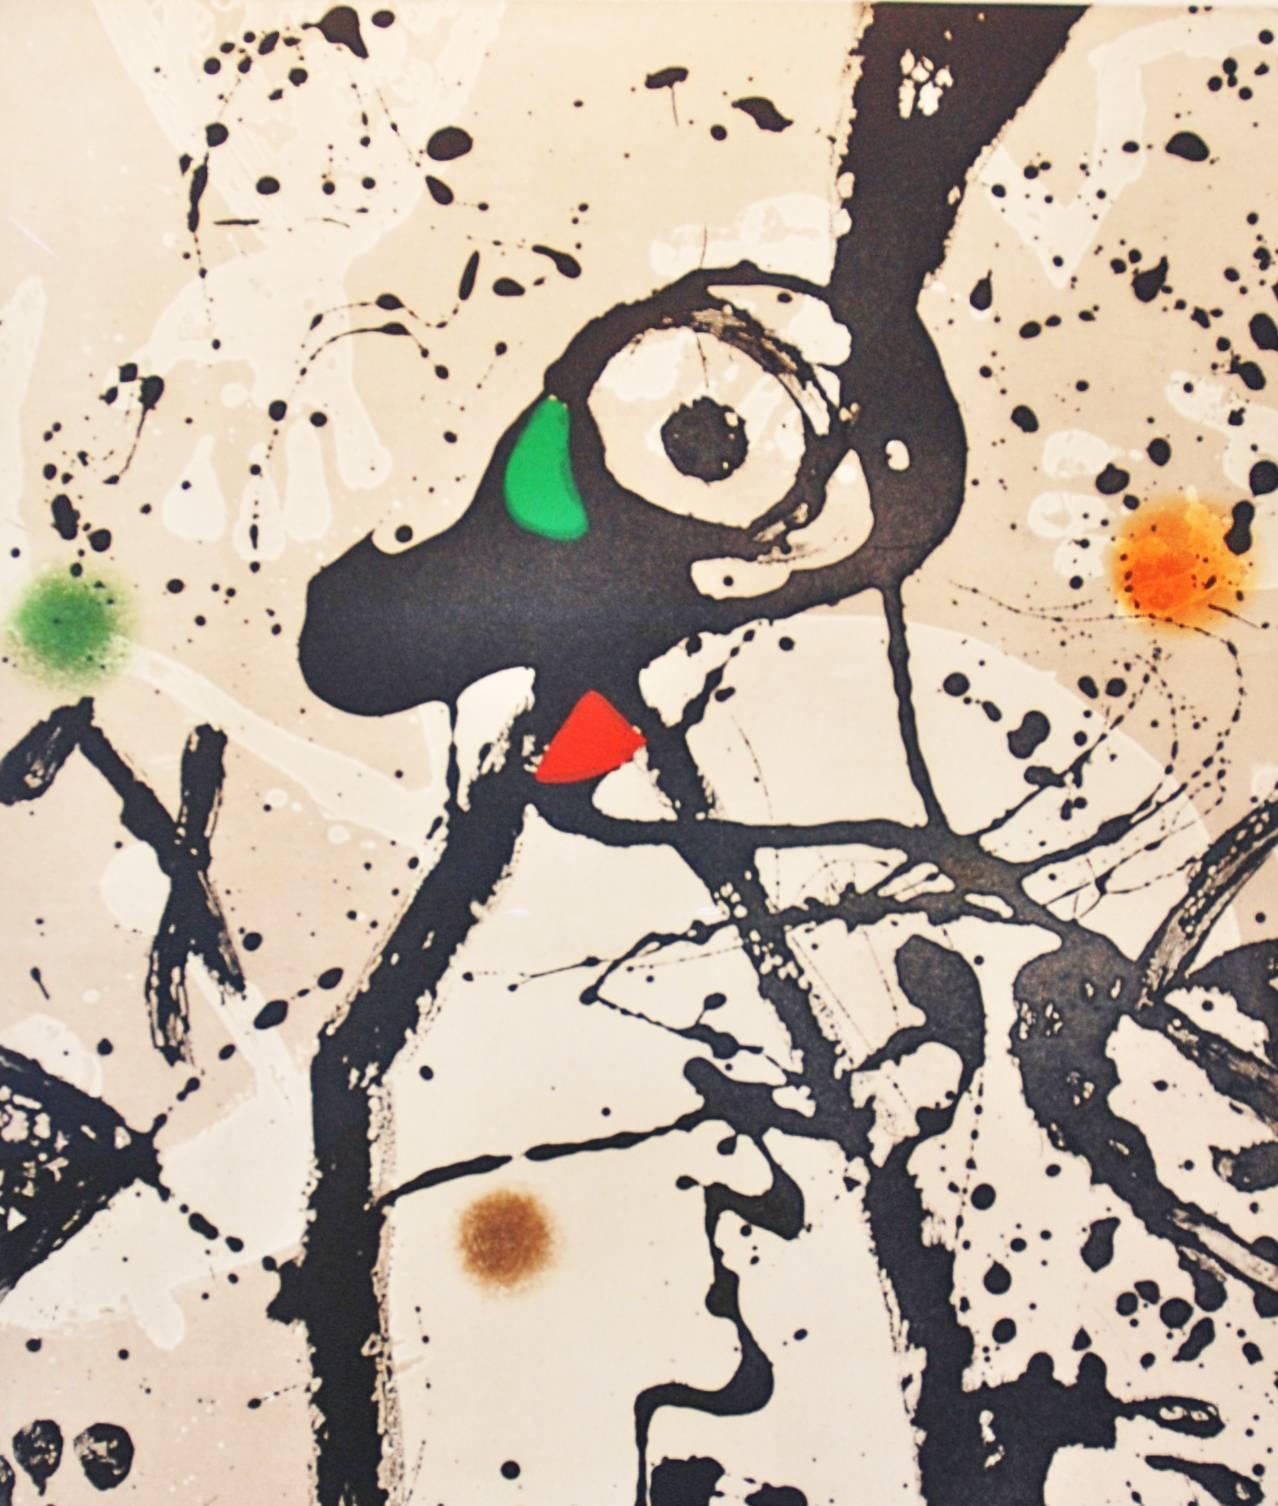 La souris noire à la mantilla - Print by Joan Miró